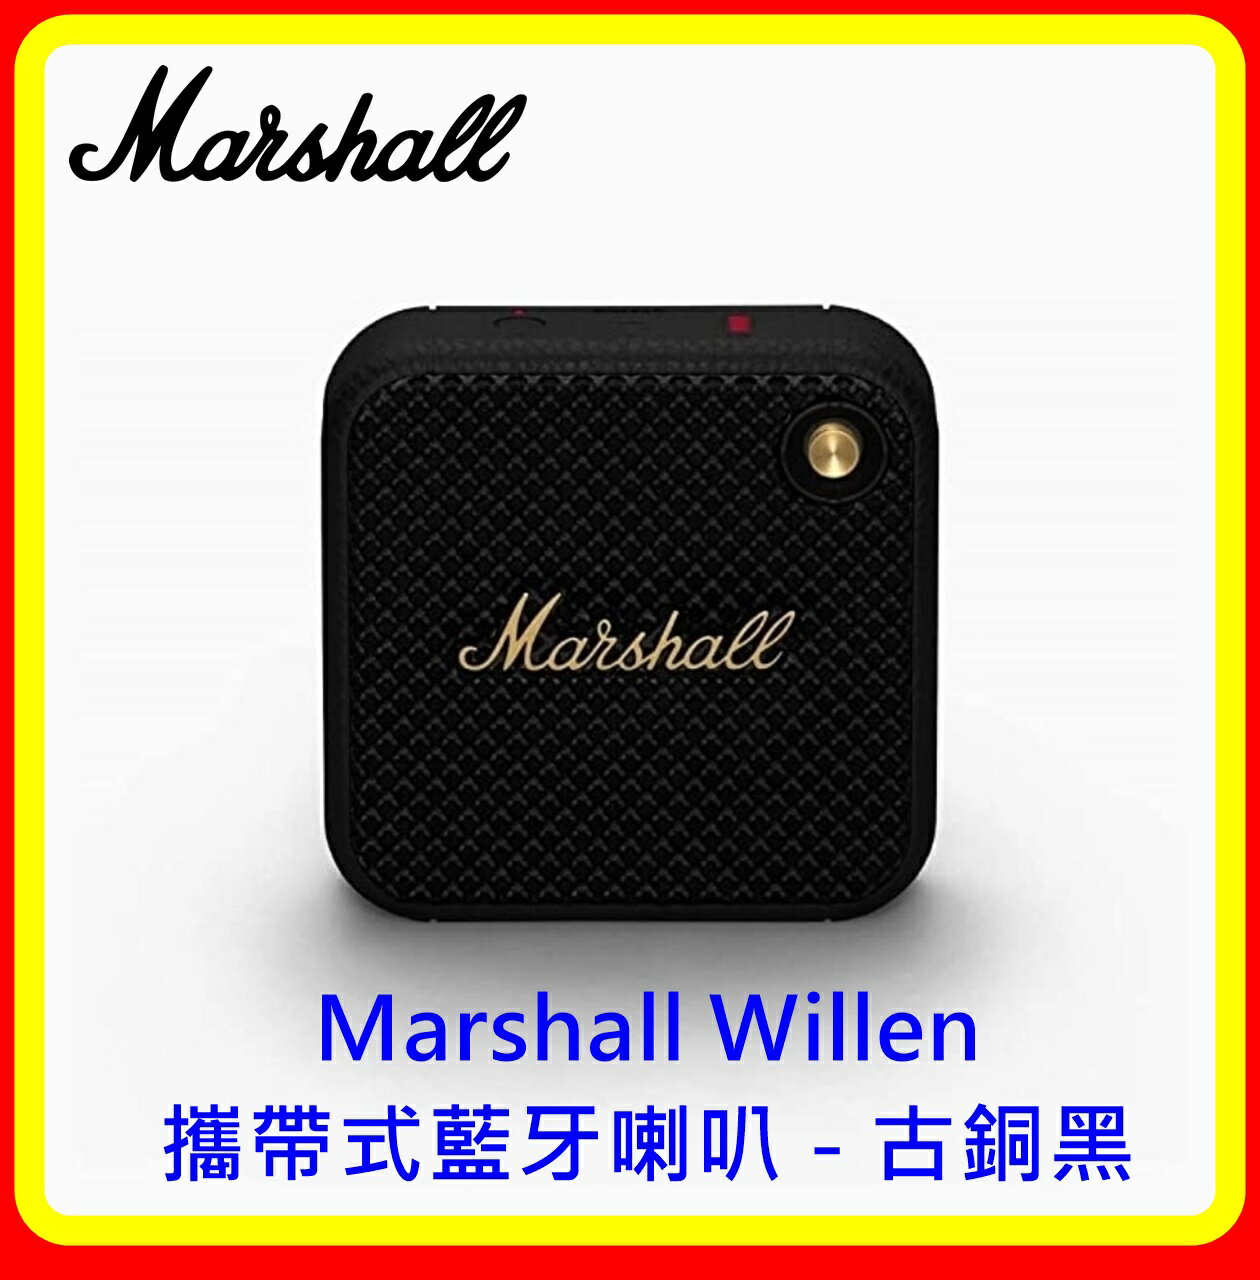 【現貨】Marshall Willen 攜帶式藍牙喇叭 - 古銅黑 台灣原廠公司貨